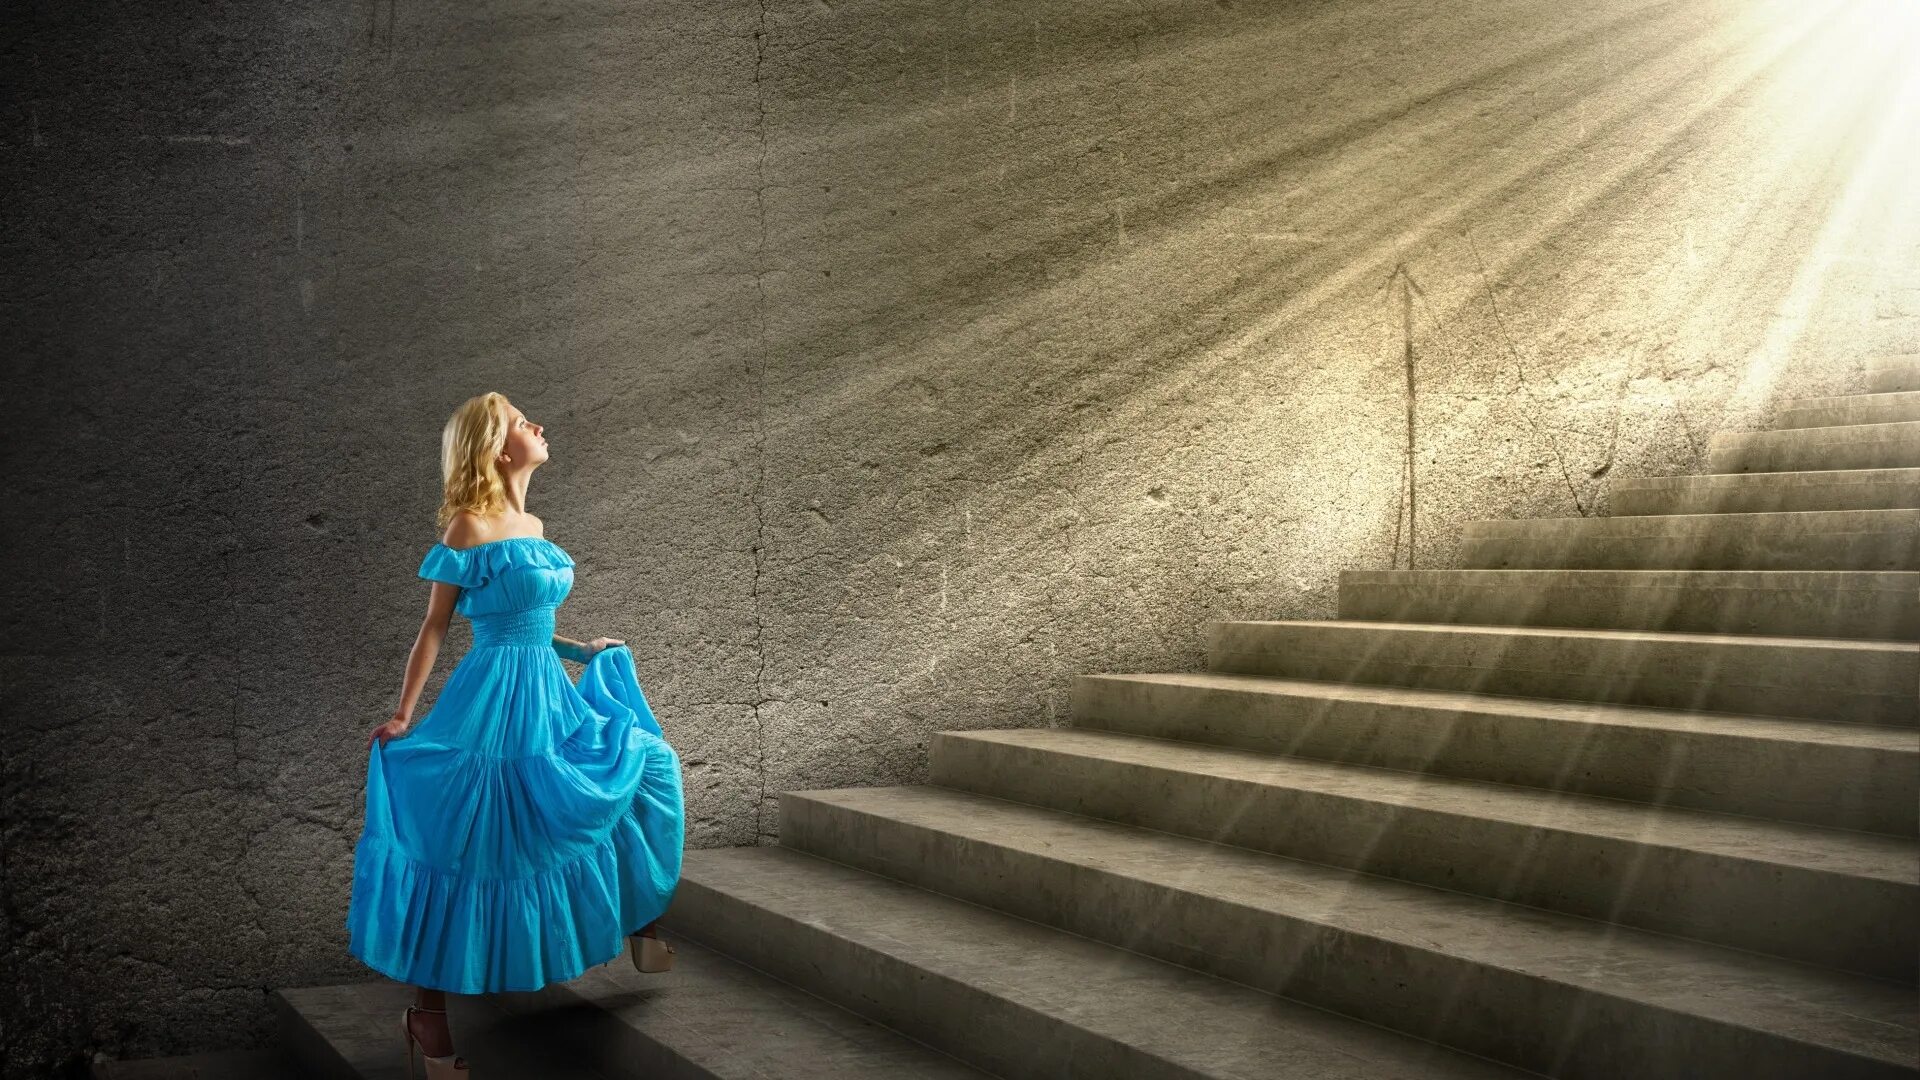 По маленькой лестнице поднялись. Девушка в длинном платье. Девушка поднимается по лестнице. Фотосессия на лестнице. Девушка в платье поднимается по лестнице.